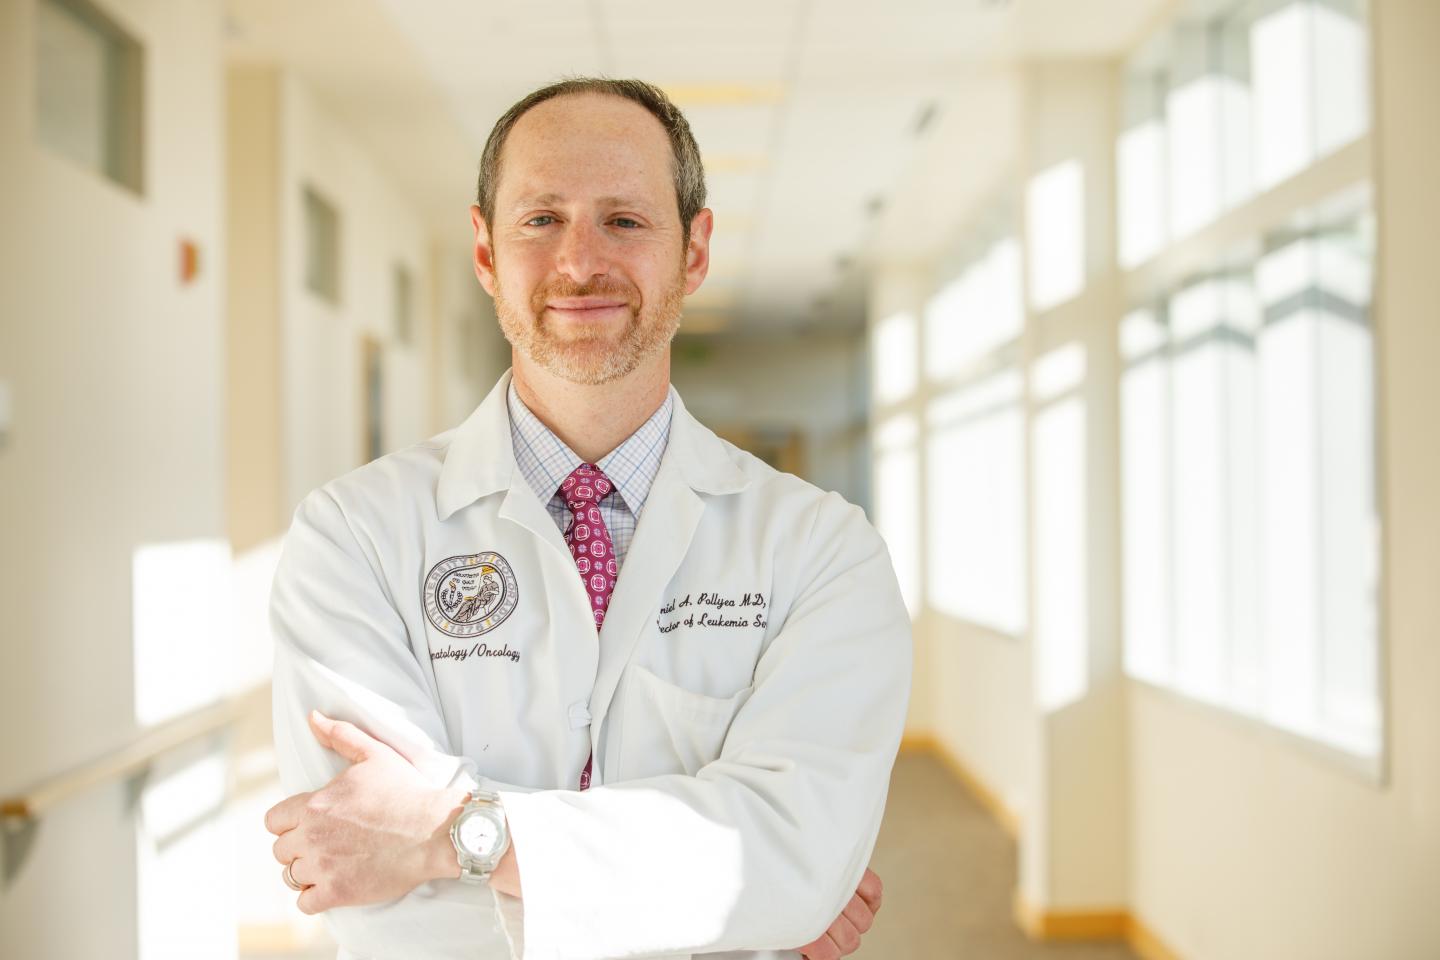 Daniel A. Pollyea, University of Colorado Anschutz Medical Campus